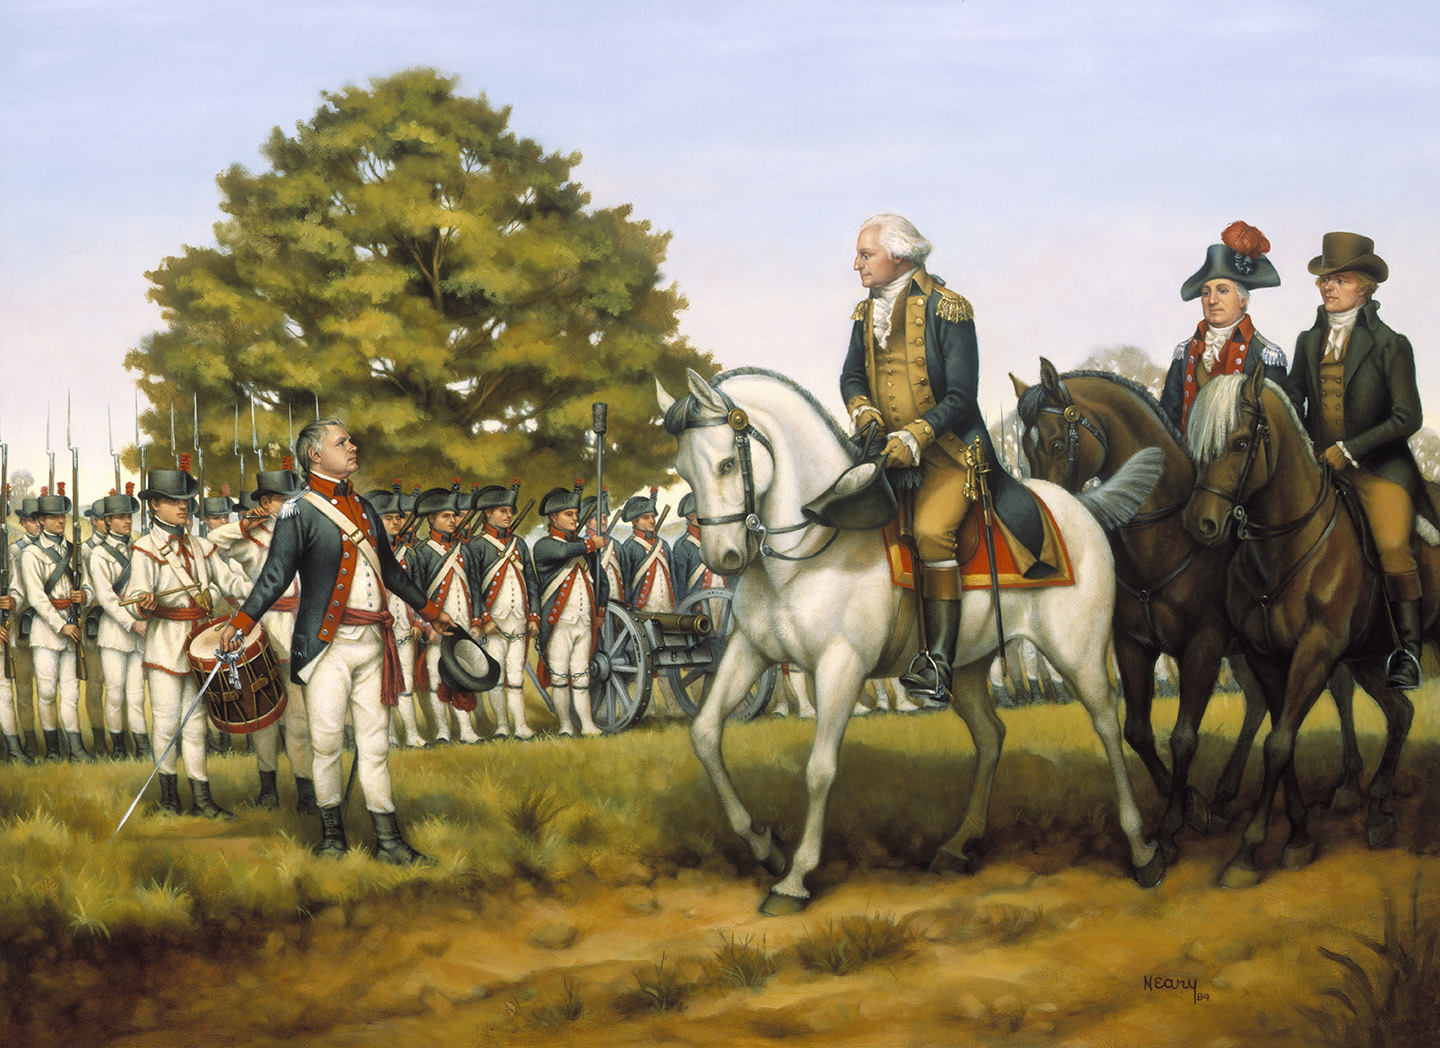 Tranh minh họa Tổng thống Washington lần đầu tiên sử dụng Thiết Quân Luật để “Thi Hành Luật Liên minh” trong Cuộc Nổi loạn Rượu Whiskey năm 1794, của họa sĩ Donna Neary. The National Guard (Vệ binh Quốc gia). (Ảnh: Tư liệu công cộng)